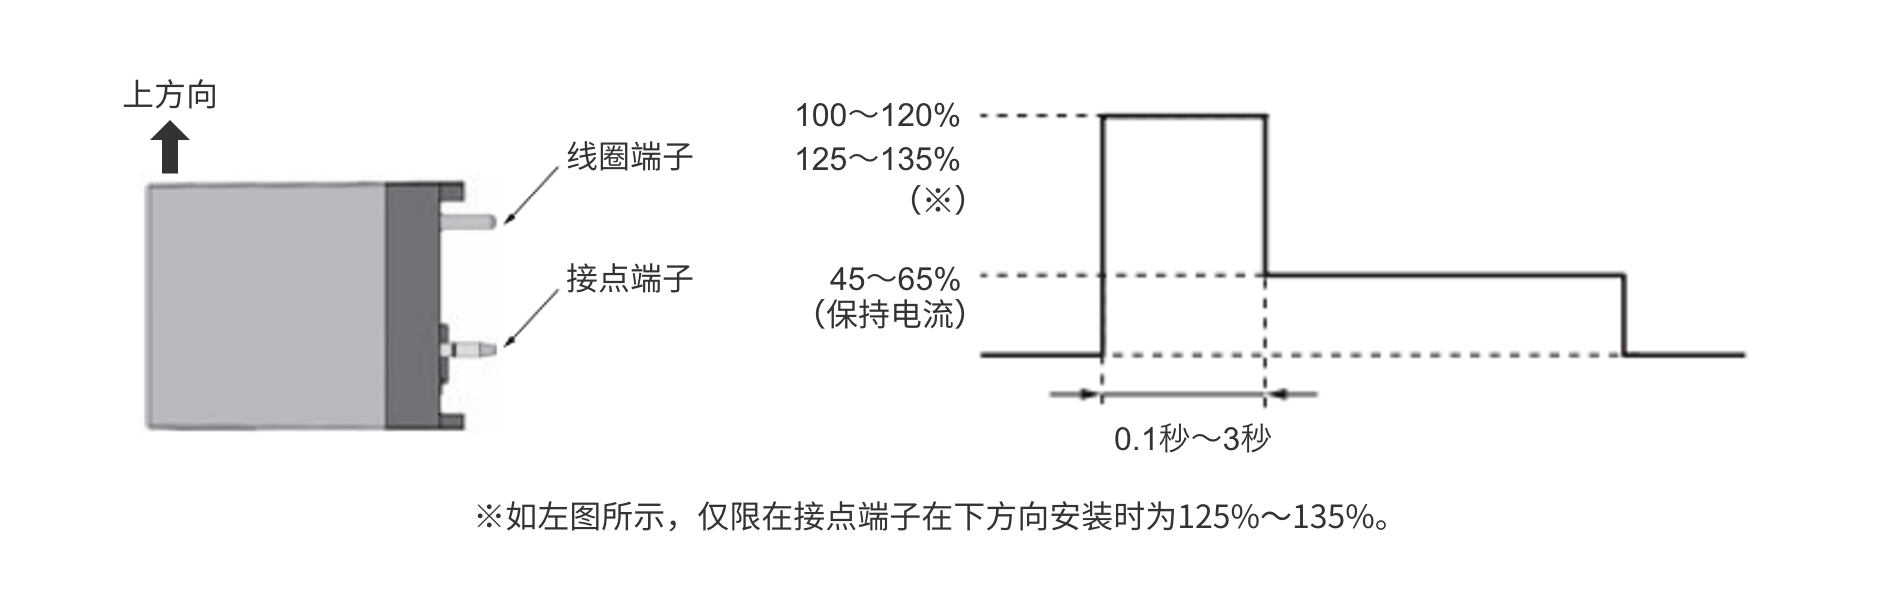 ※如左图所示，仅限在接点端子在下方向安装时为125%～135%。